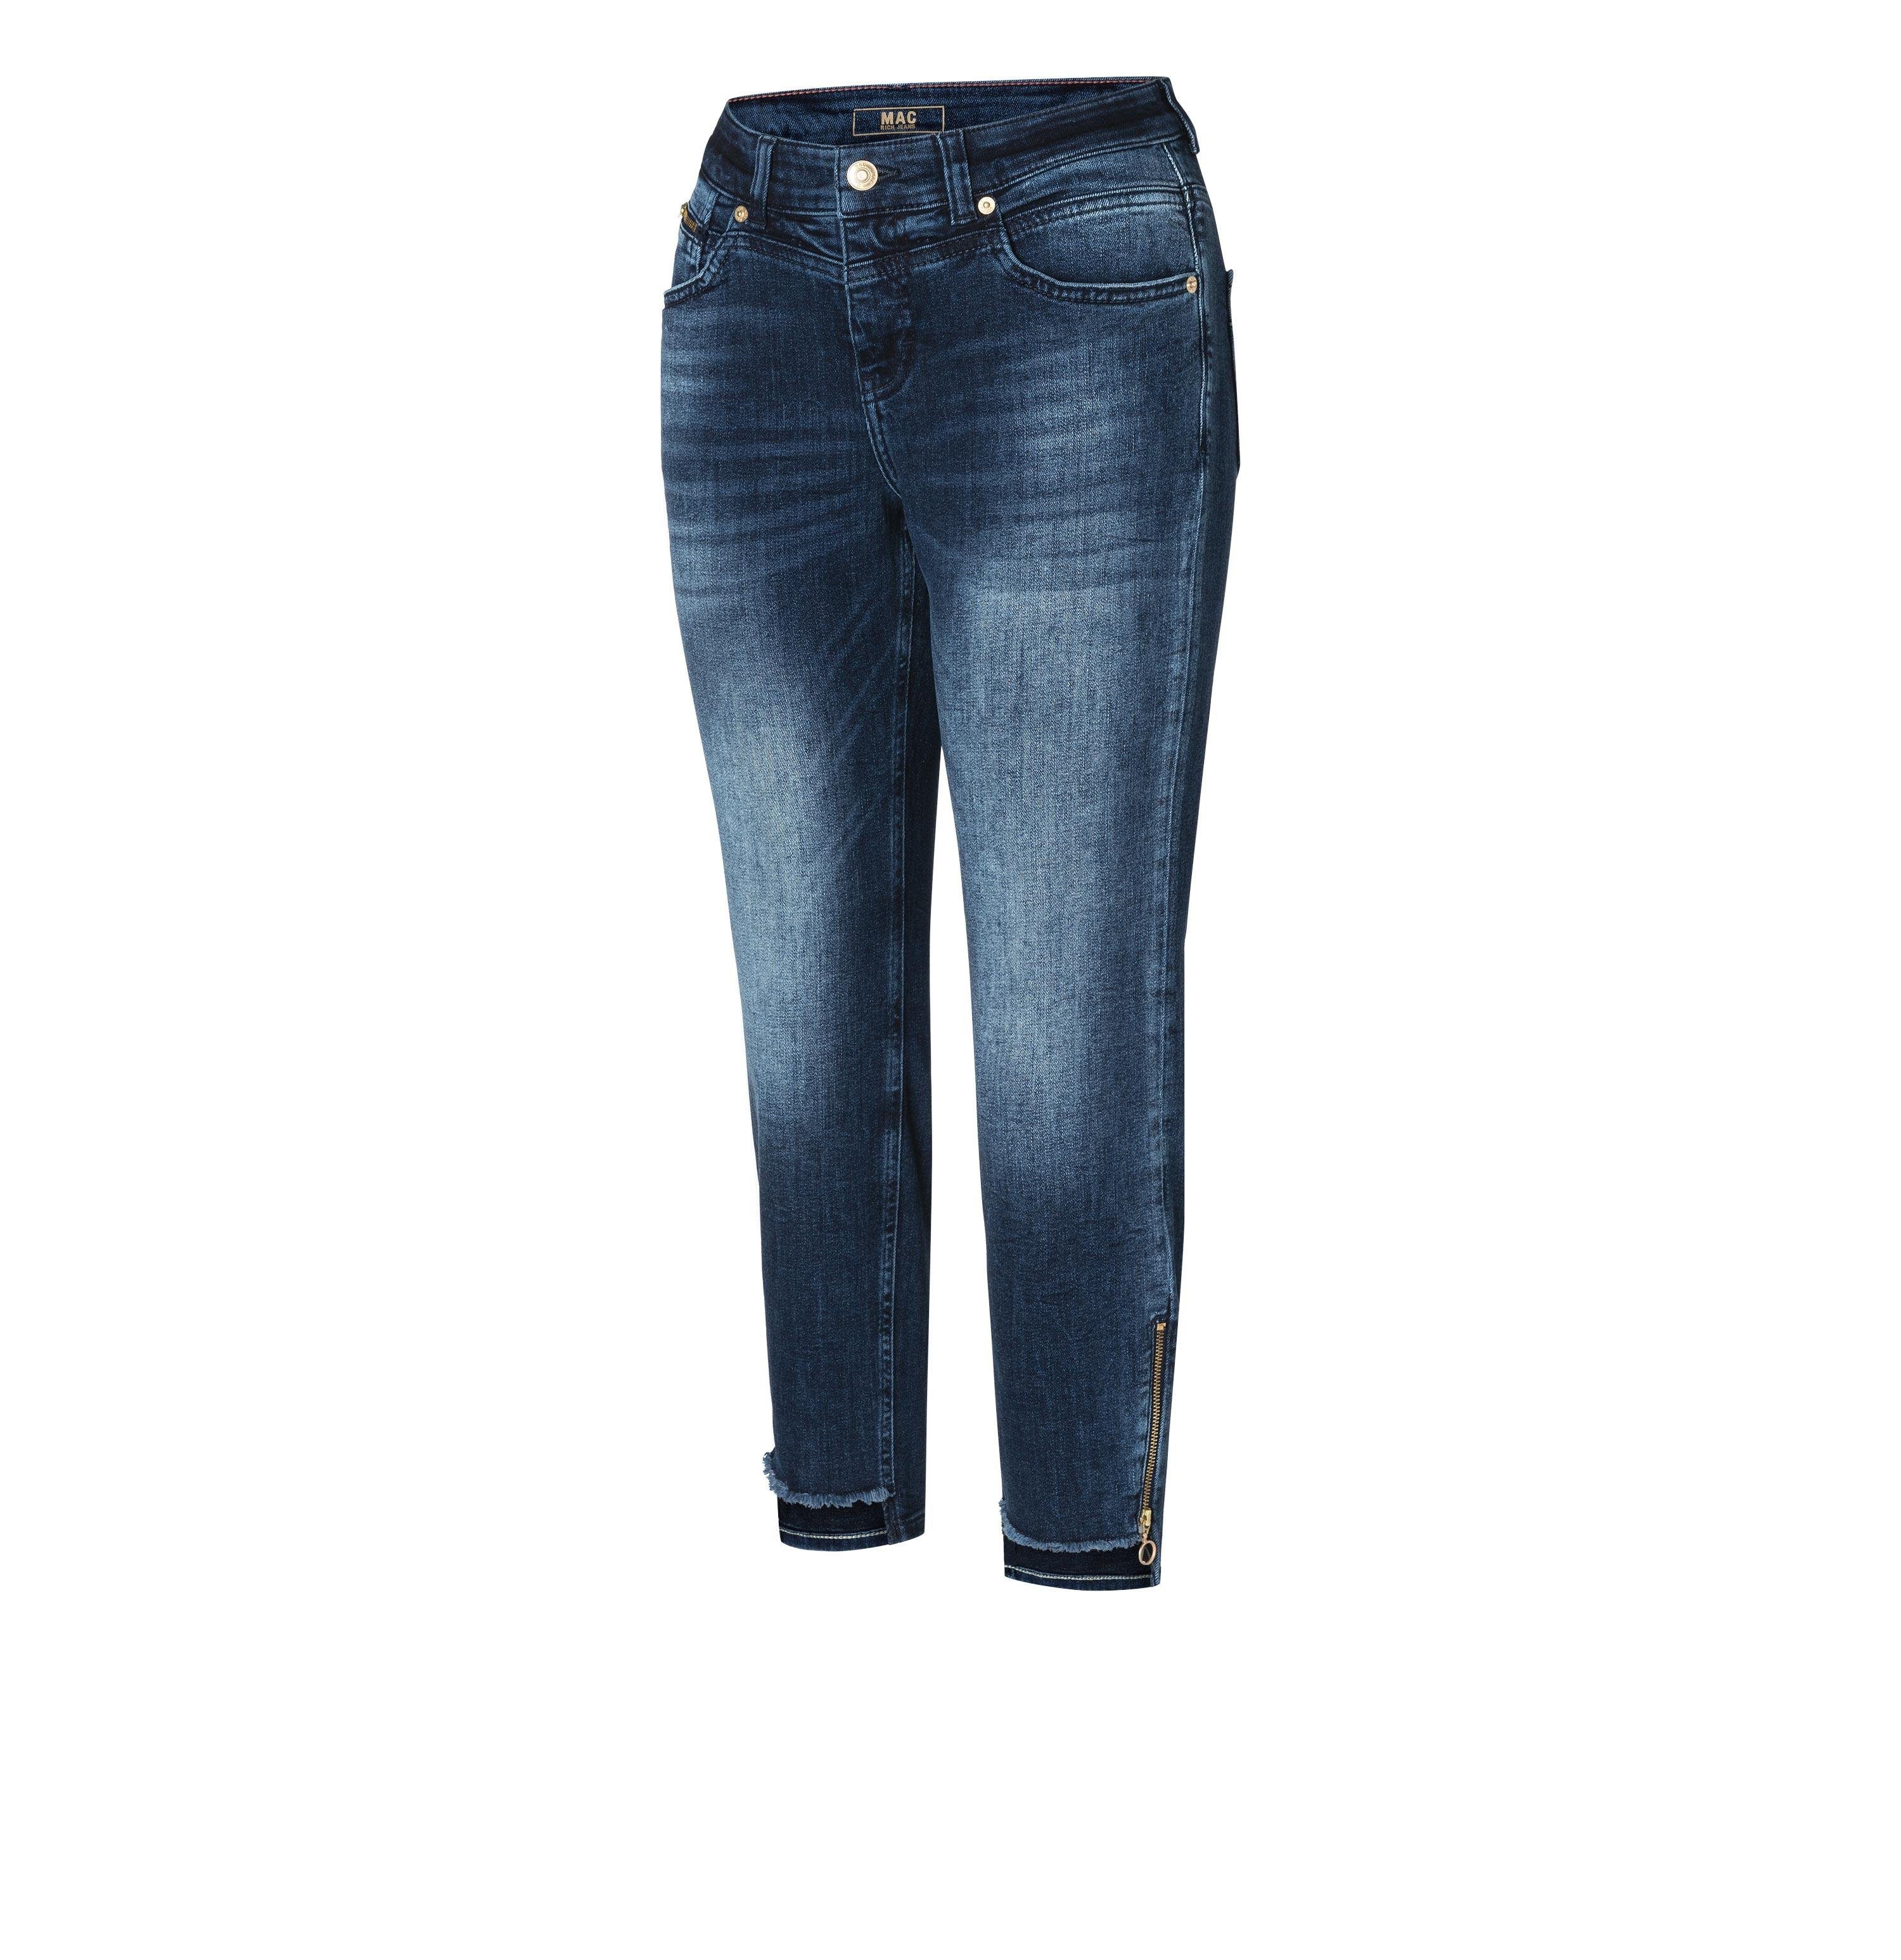 MAC wash D812 RICH 5755-90-0389 blue-black SLIM MAC Stretch-Jeans fashion